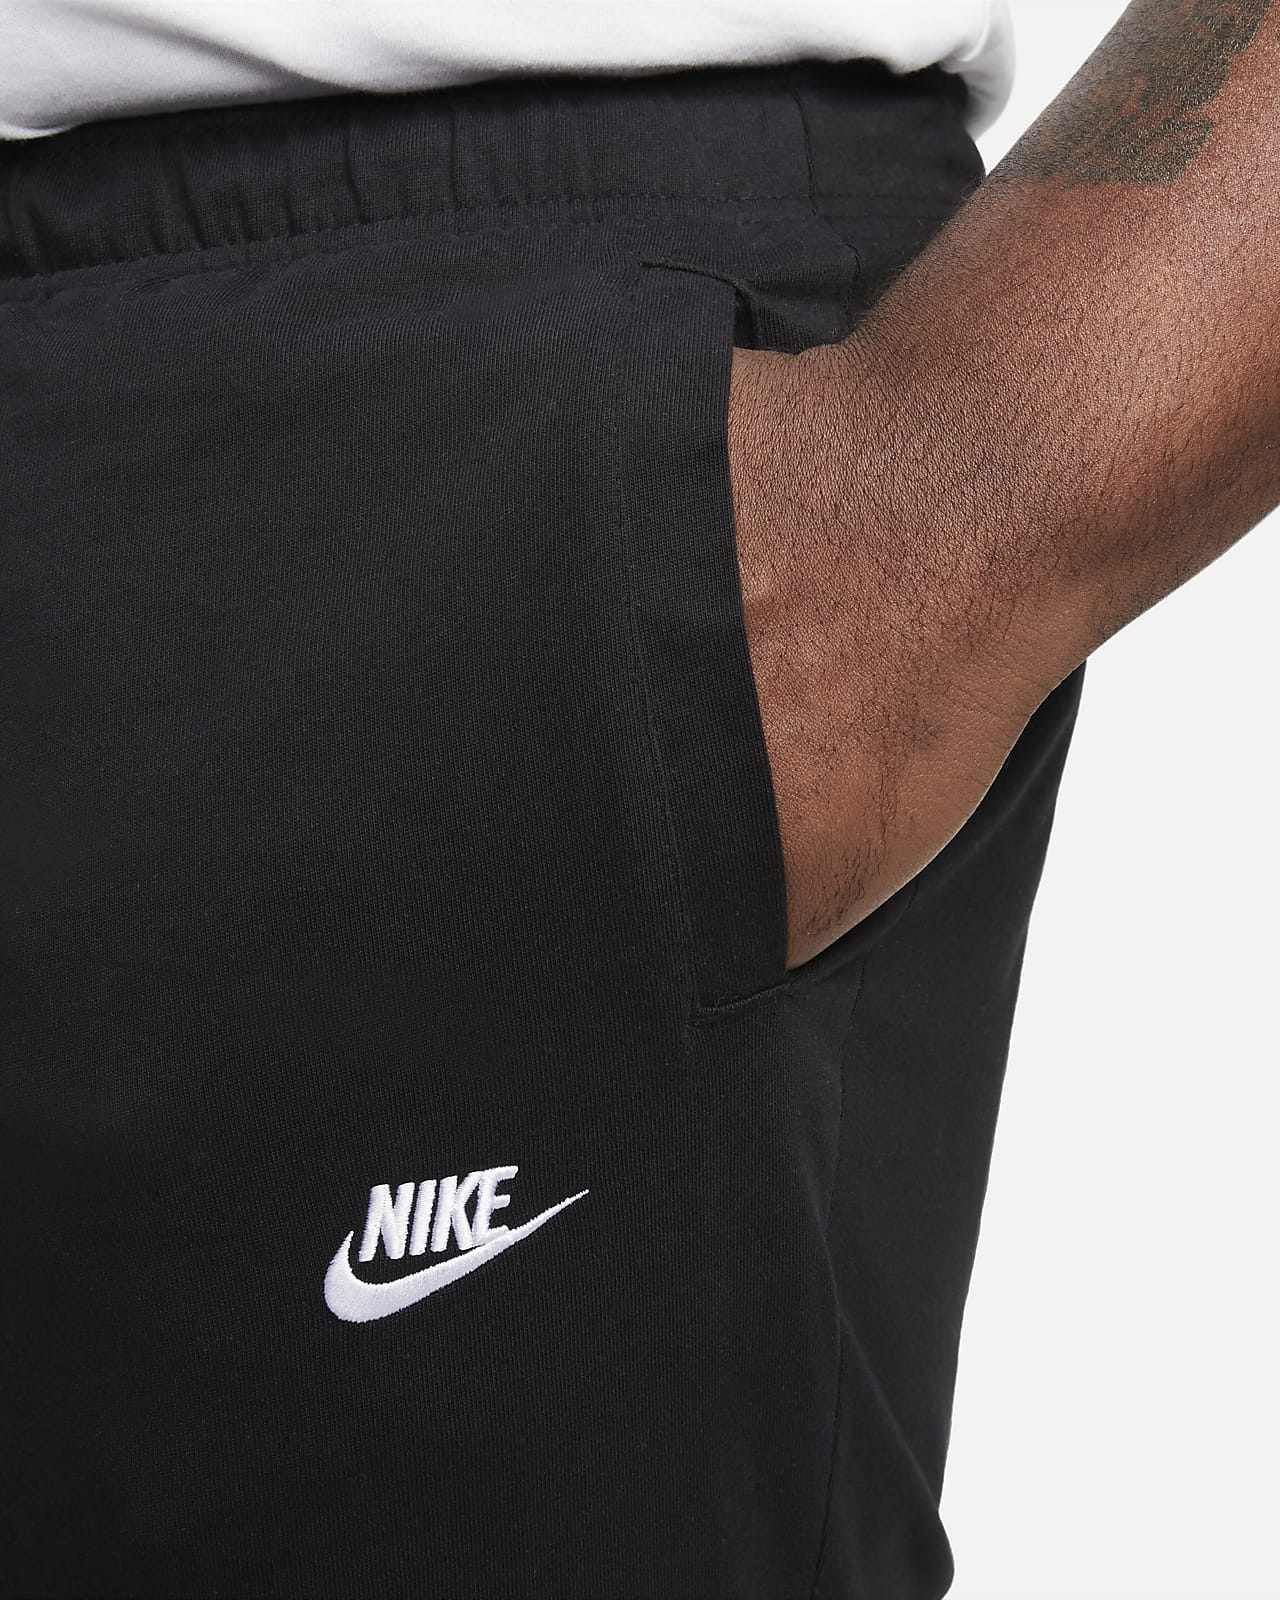 corte largo Empuje hacia abajo caloría Nike Sportswear Club Pantalón corto - Hombre. Nike ES